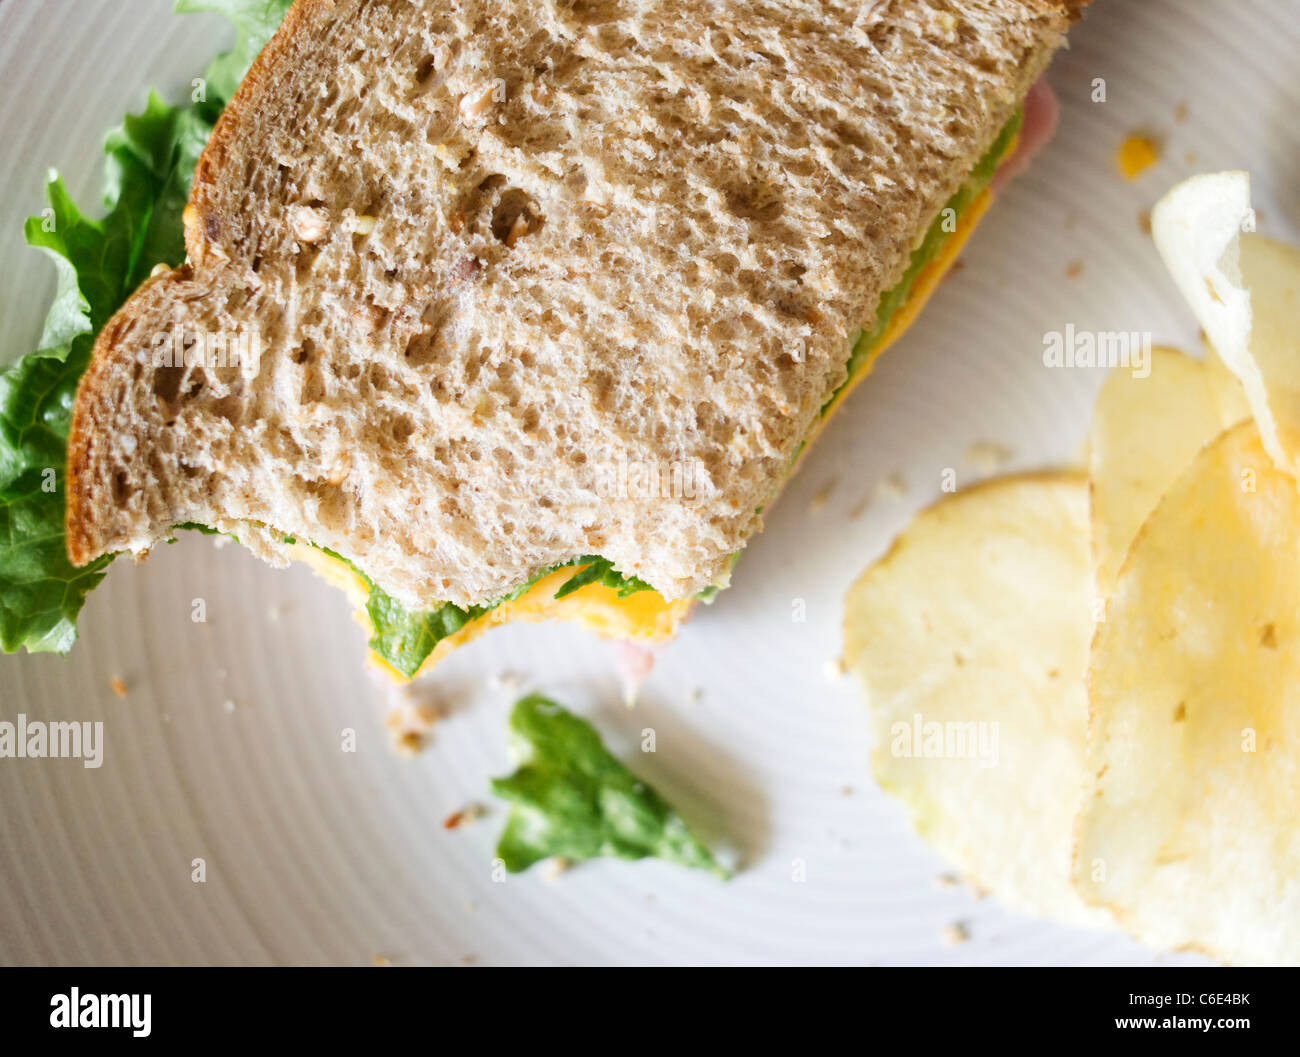 USA, New Jersey, Jersey City, Close up of sandwich Stock Photo